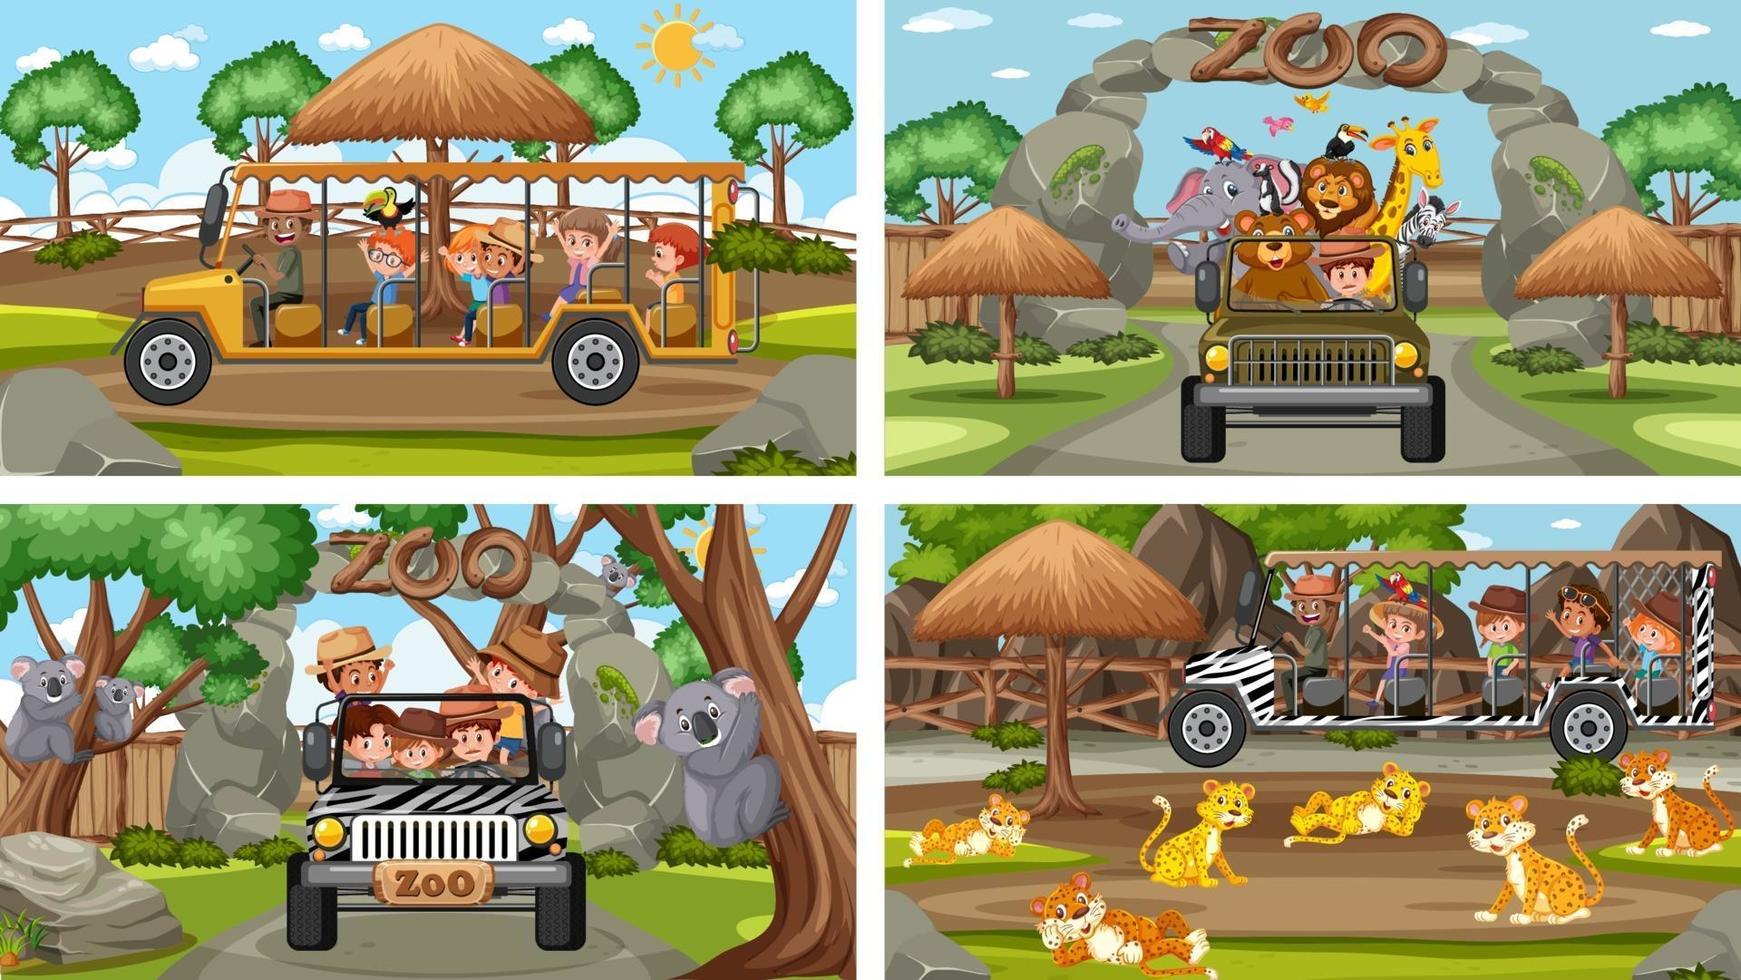 fyra olika zoo-scener med barn och djur vektor